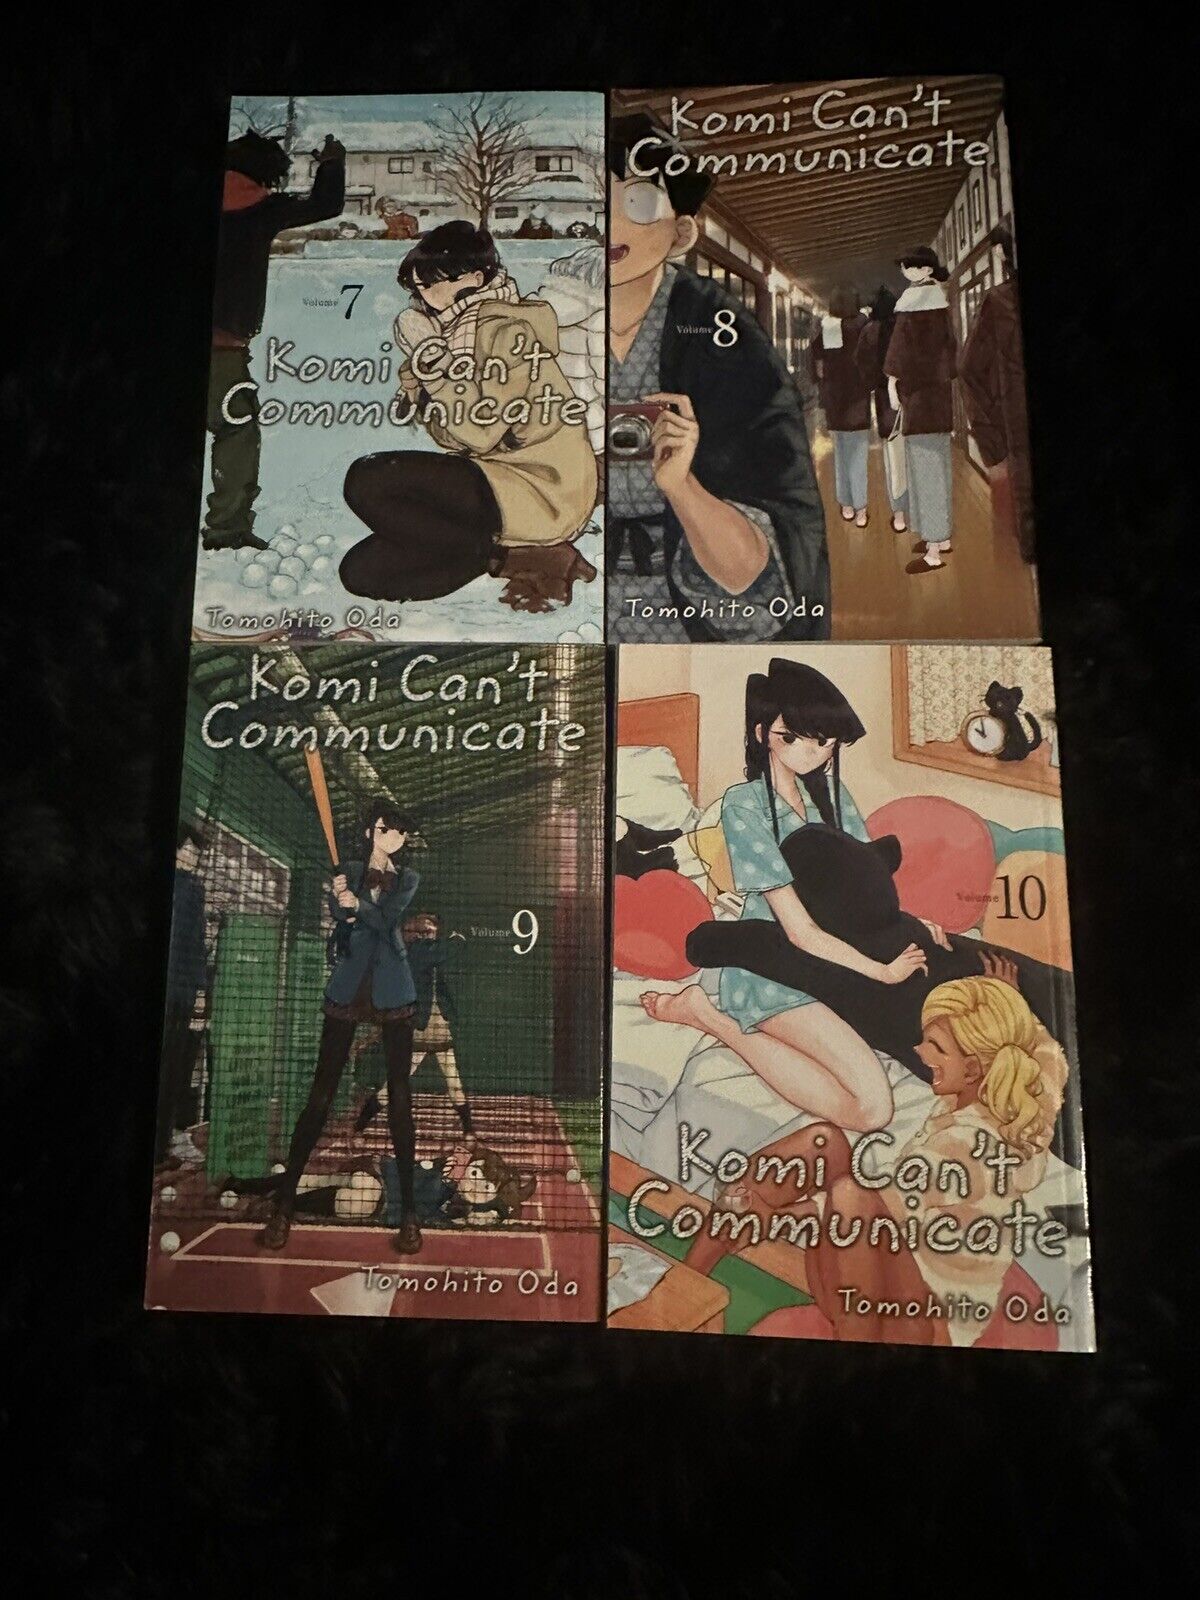 Komi Can’t Communicate : Manga Volumes 7-10 (English)